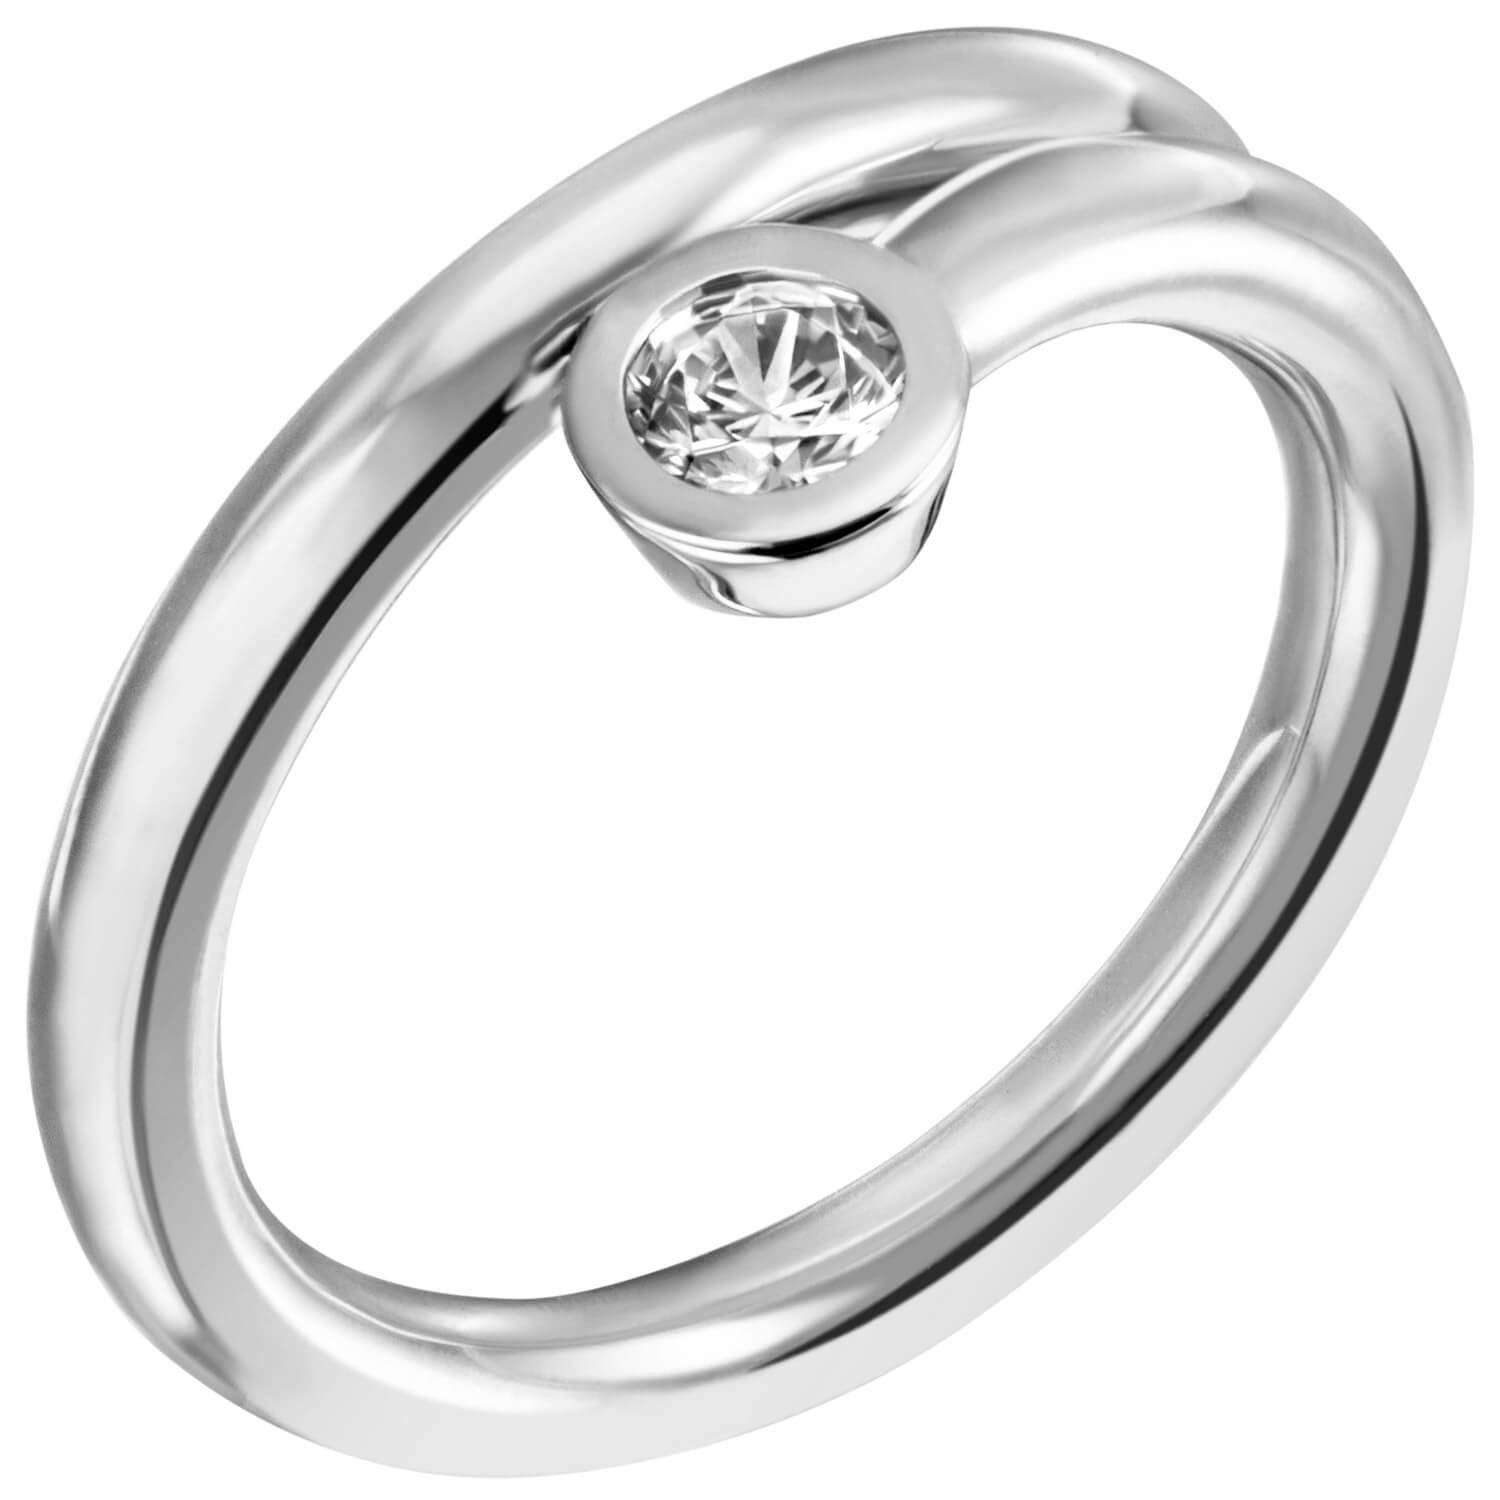 Schmuck Krone weiß mit 925 Zirkonia Silberring 925 Damenring Silber spiralförmig Solitär Silber schlicht, Ring